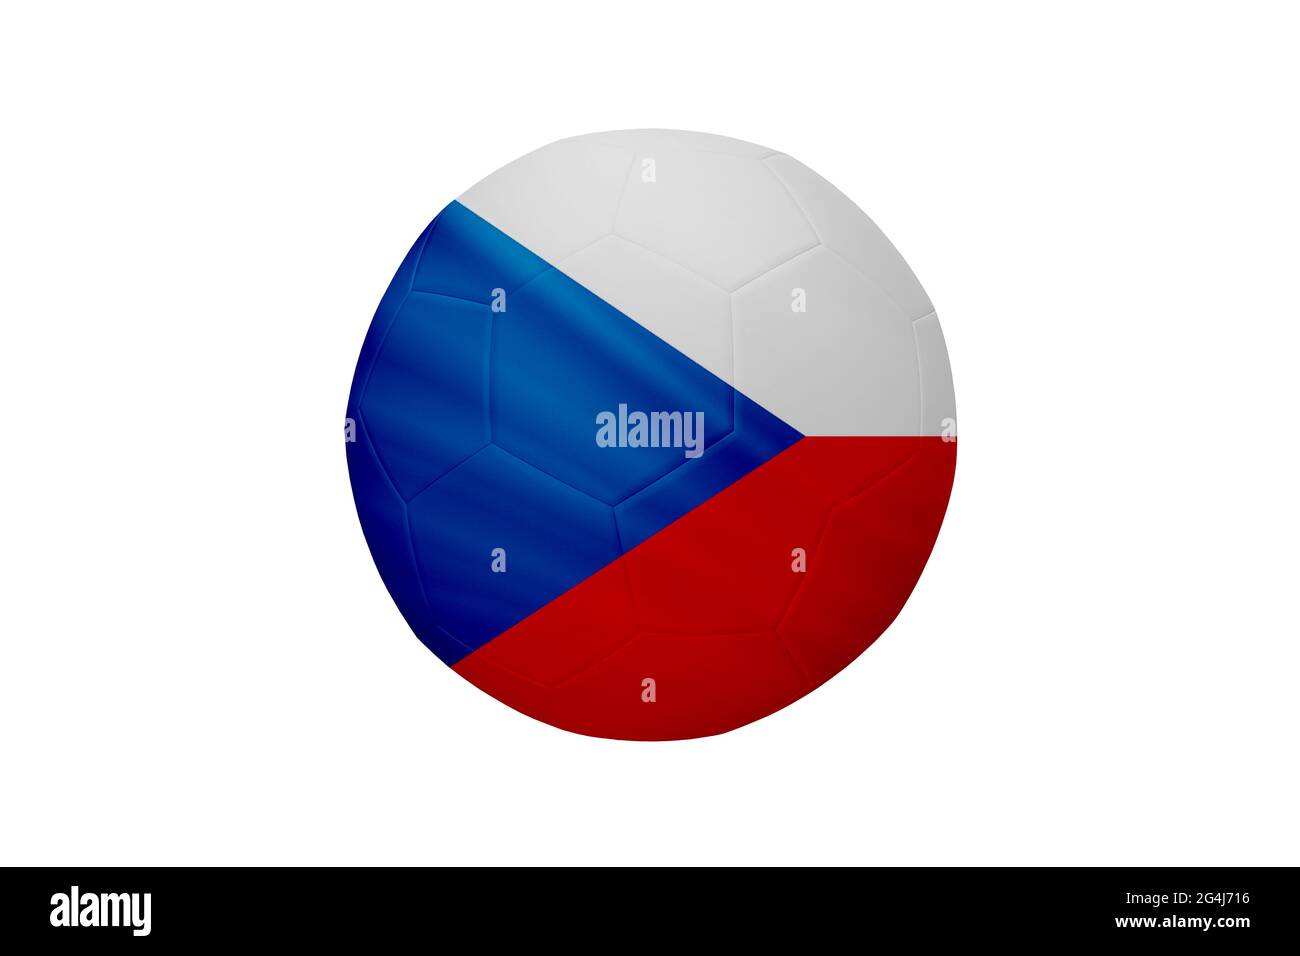 Fußball in den Farben der tschechischen Flagge isoliert auf weißem Hintergrund. In einem konzeptionellen Meisterschaftsbild, das die Tschechische Republik unterstützt. Stockfoto